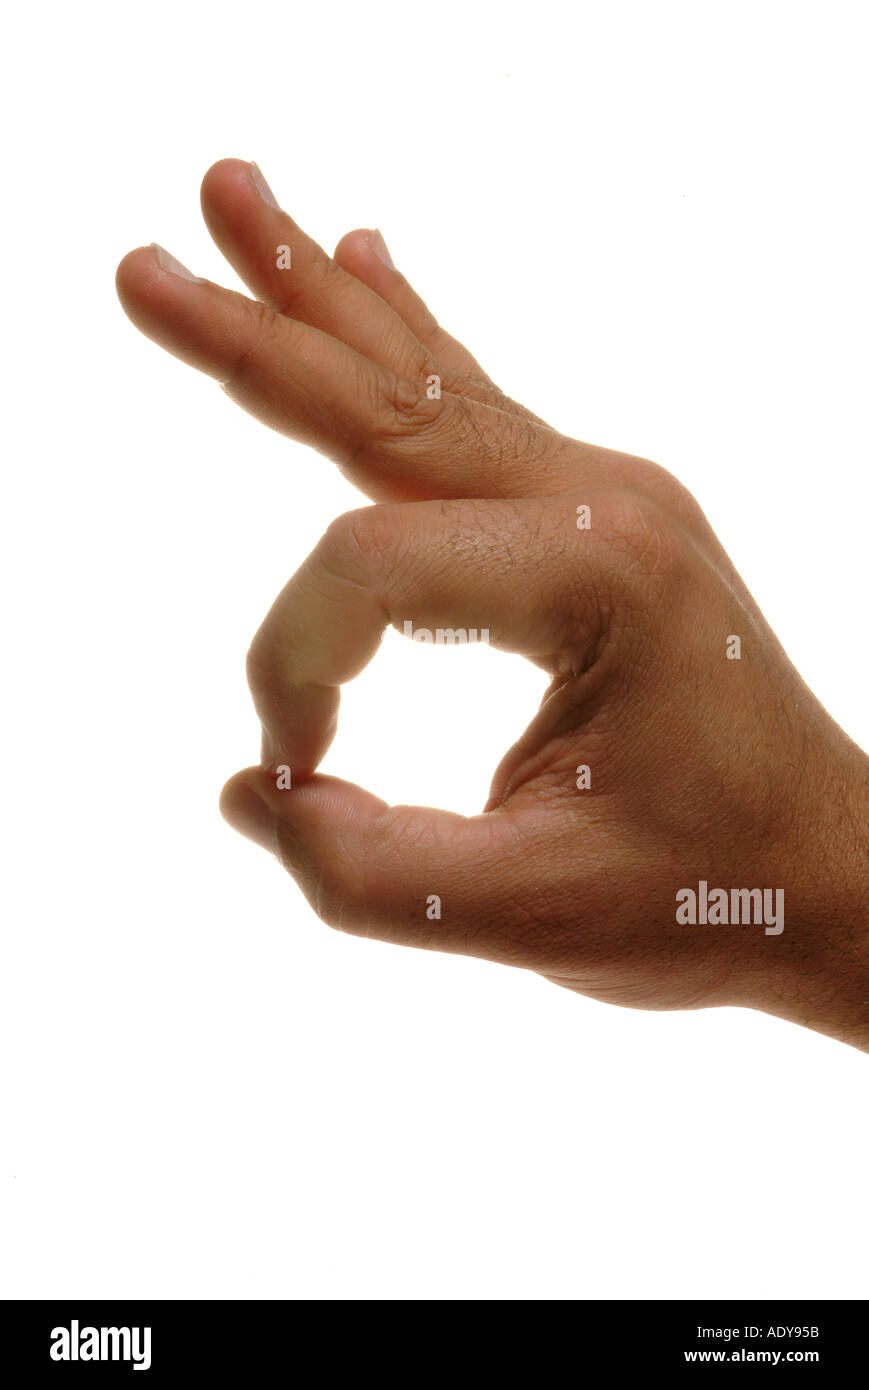 Manos persona personas mano dedo pulgar muñeca dedos pulgares clavos  lifeline señal blanca piel puño bien bien buena rabb agujero OK Fotografía  de stock - Alamy